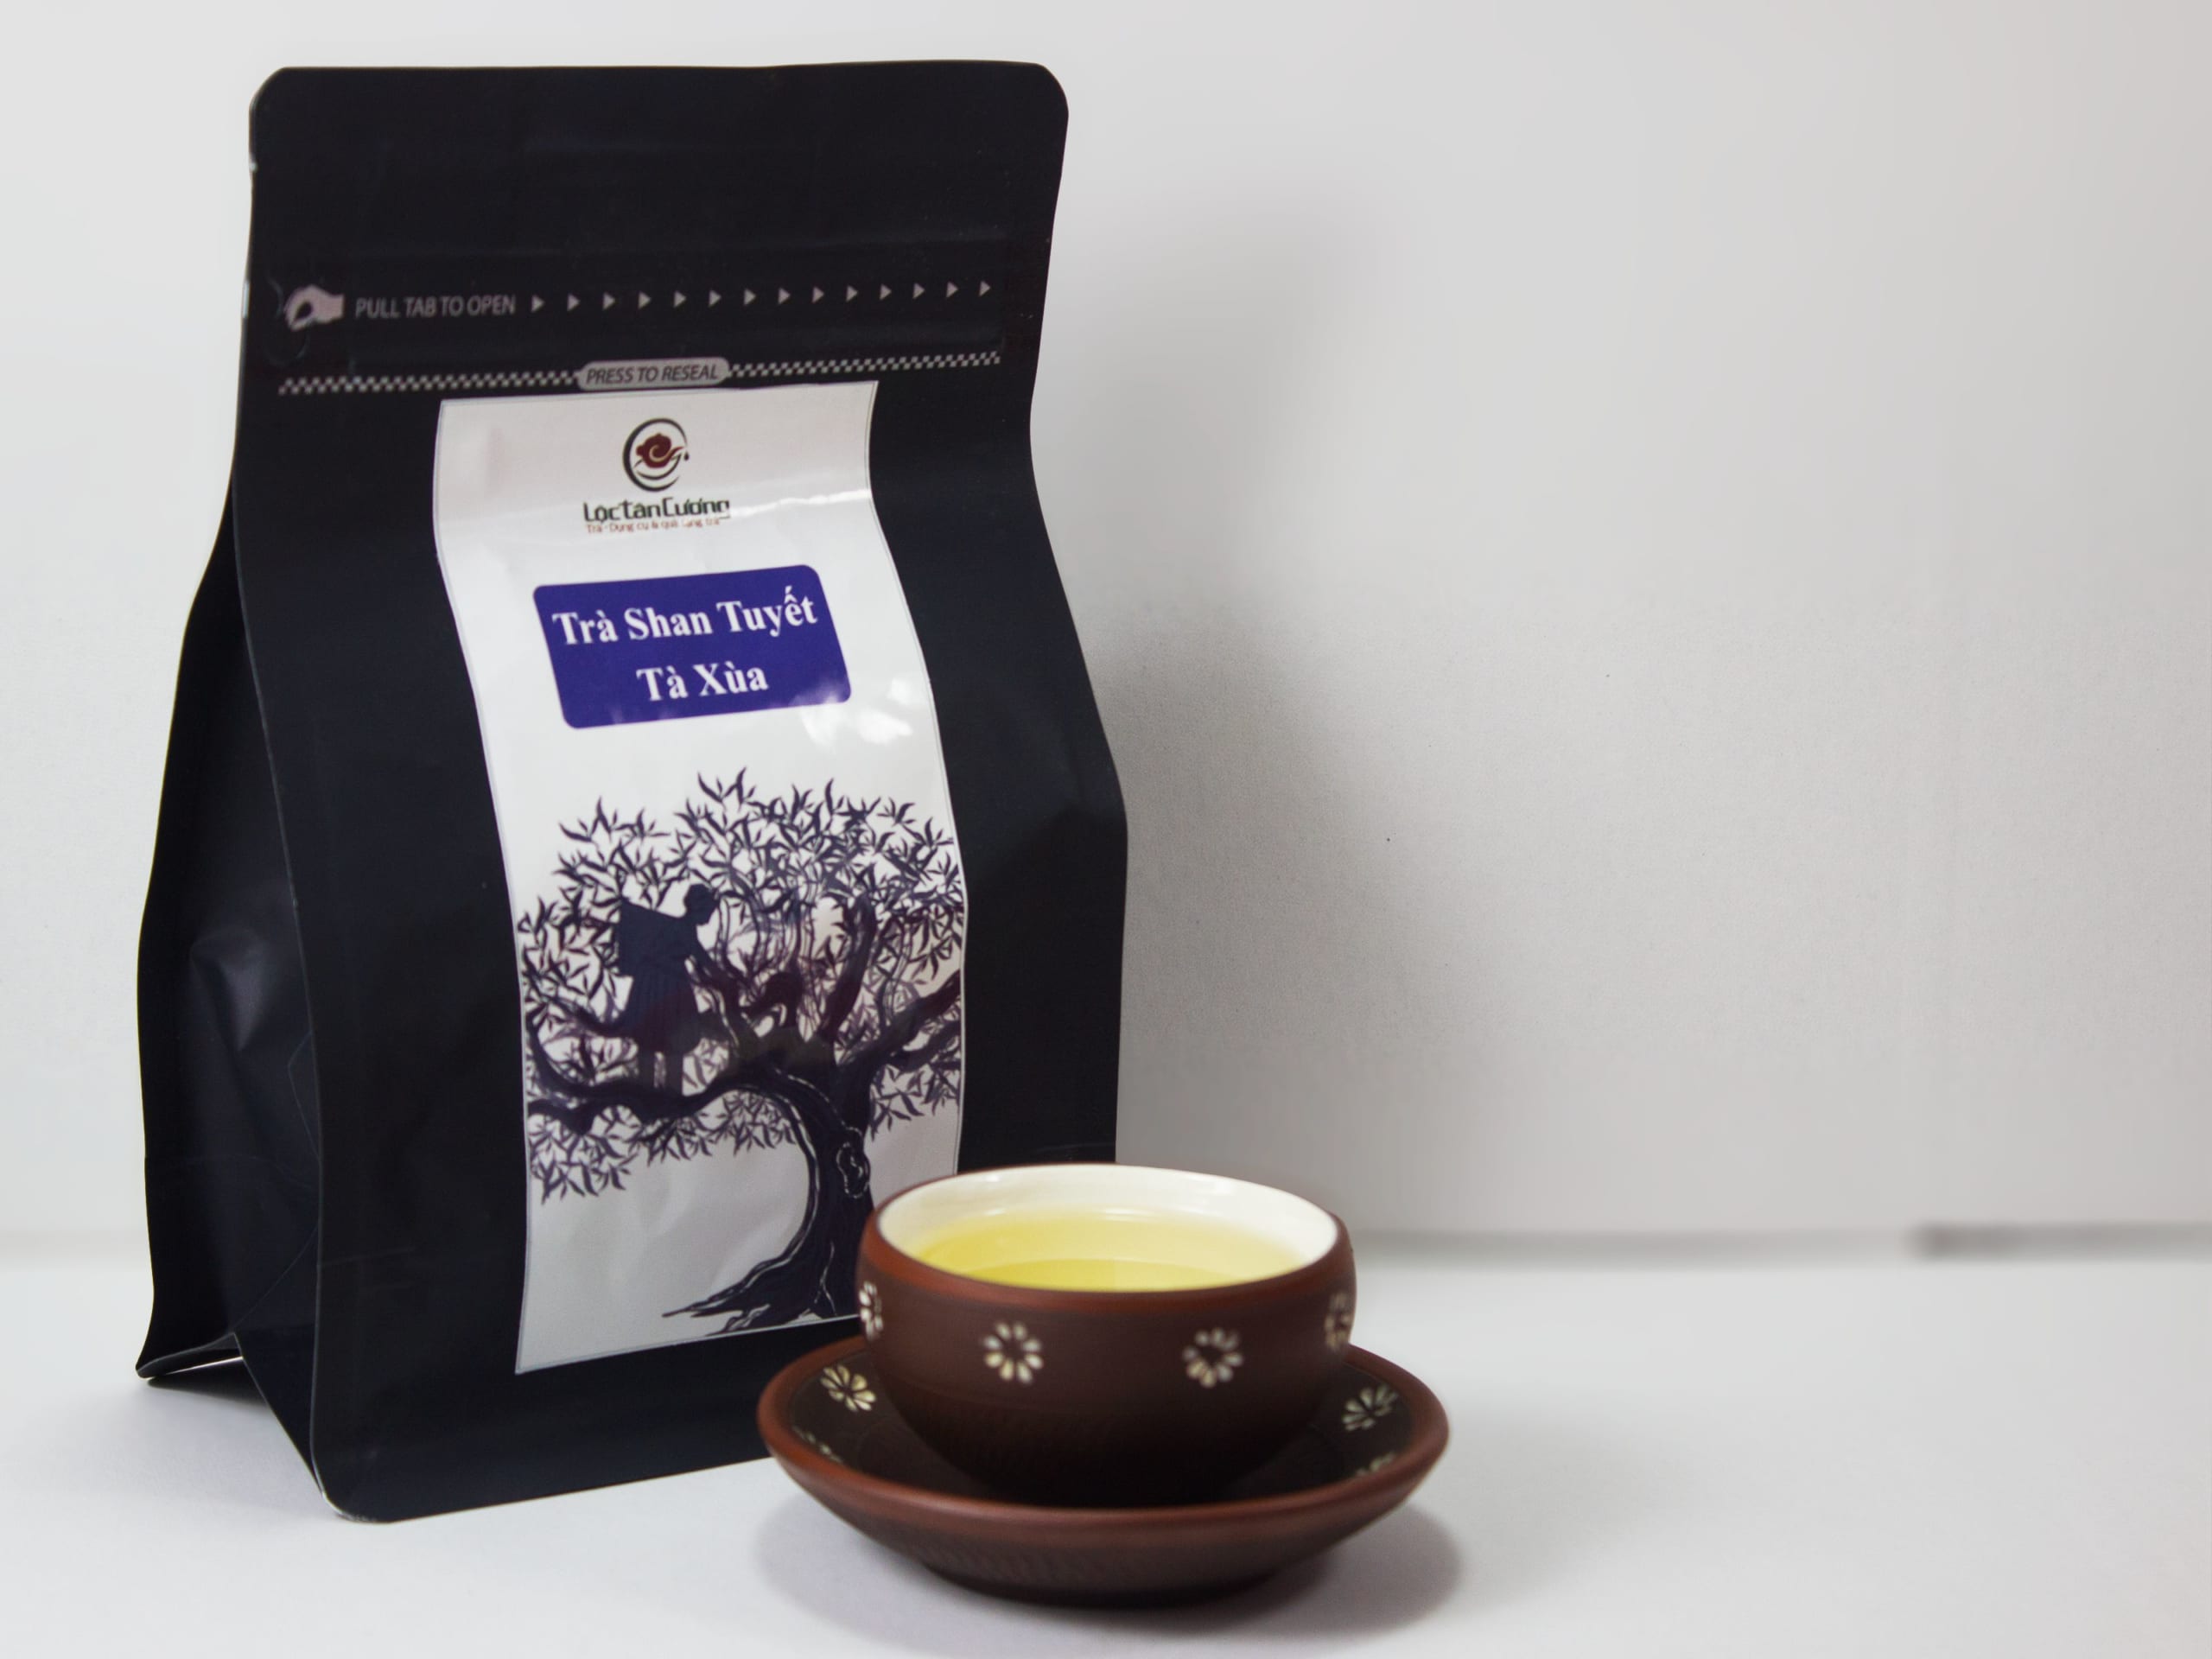 Tặng trà và bộ ấm trà - lựa chọn thích hợp cho sức khoẻ và gửi gắm tình cảm chân thành đến khách hàng